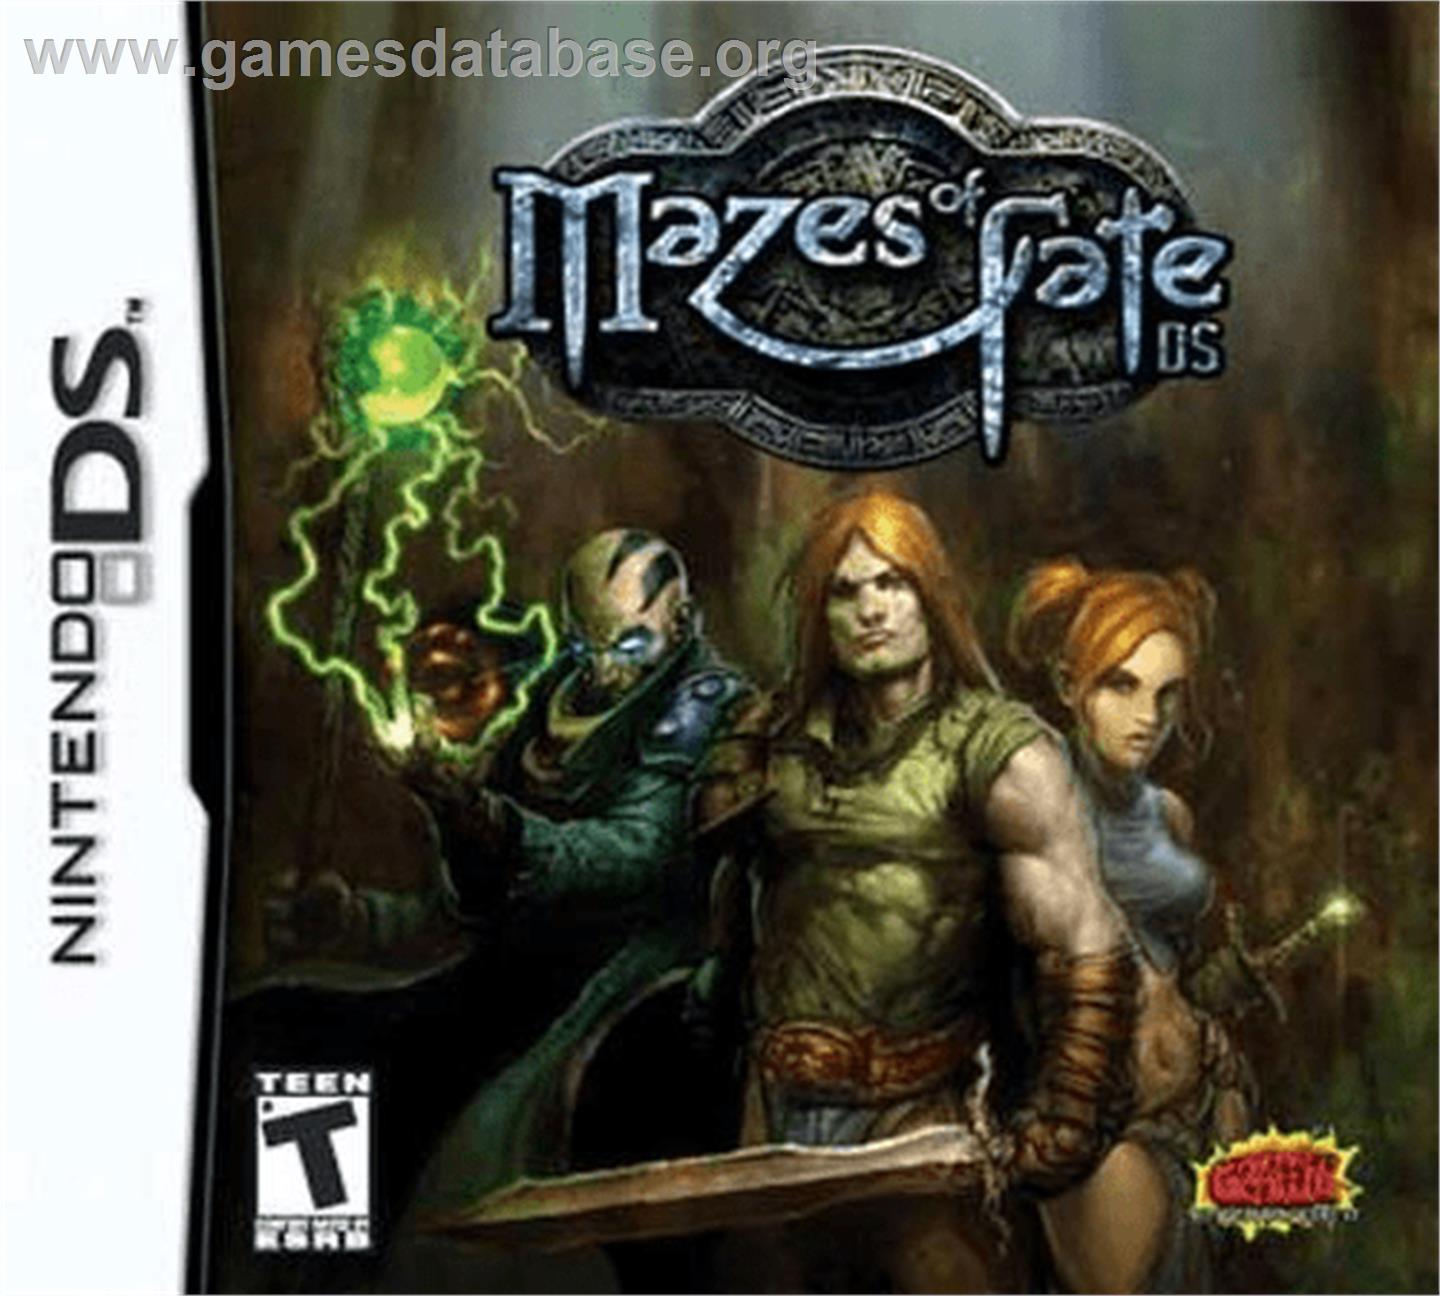 Mazes of Fate - Nintendo DS - Artwork - Box